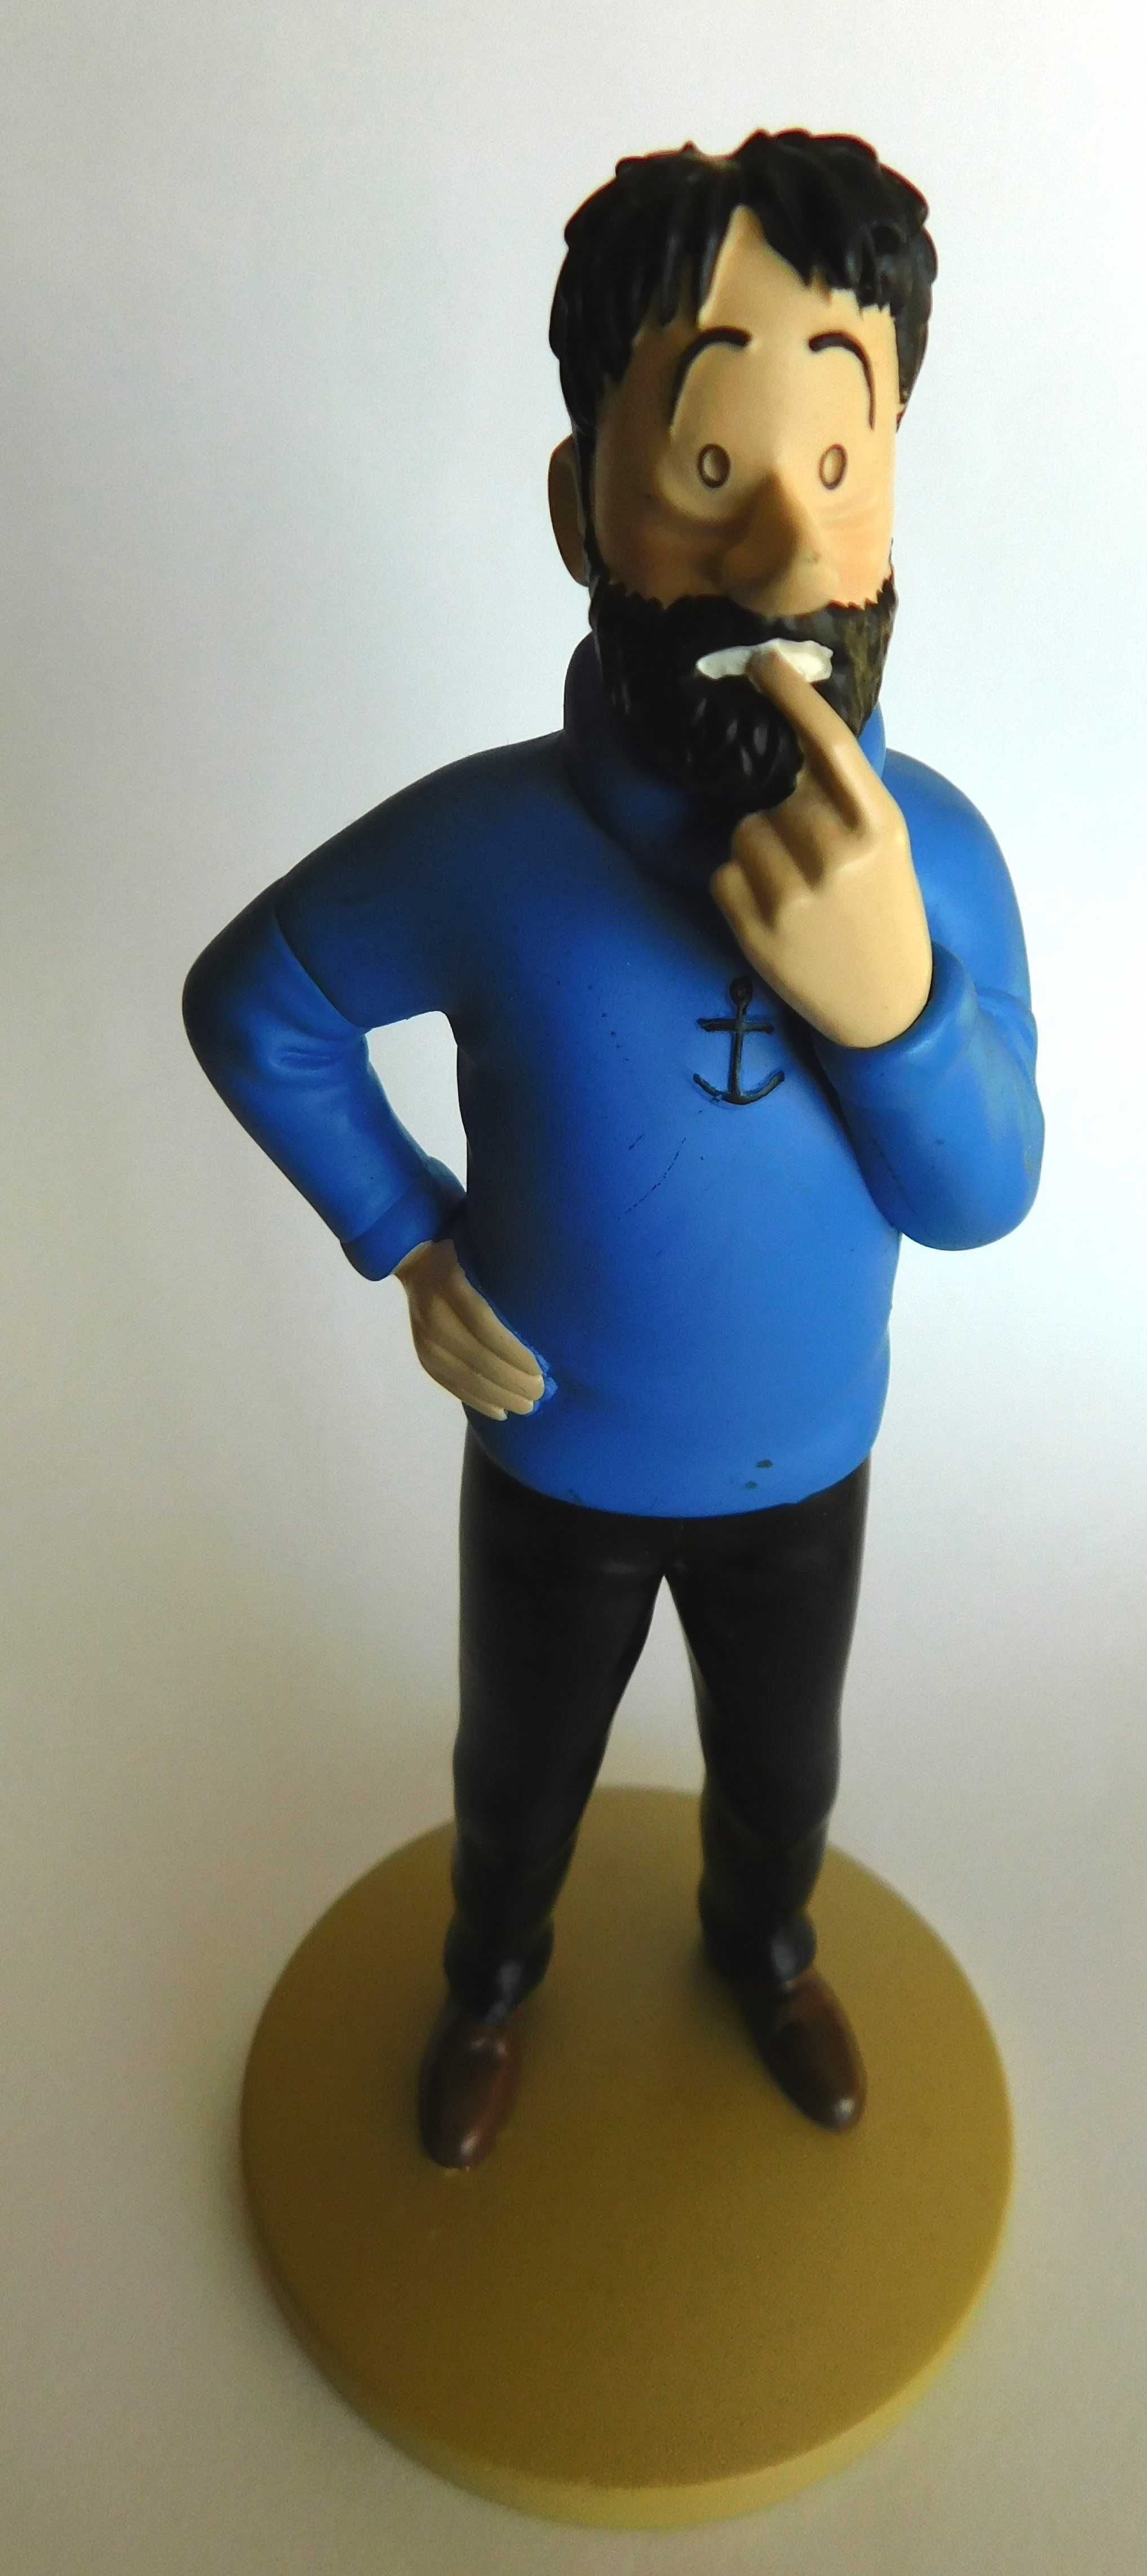 Figura Tintin Capitão Haddock Coleção oficial Moulinsart Hergé França